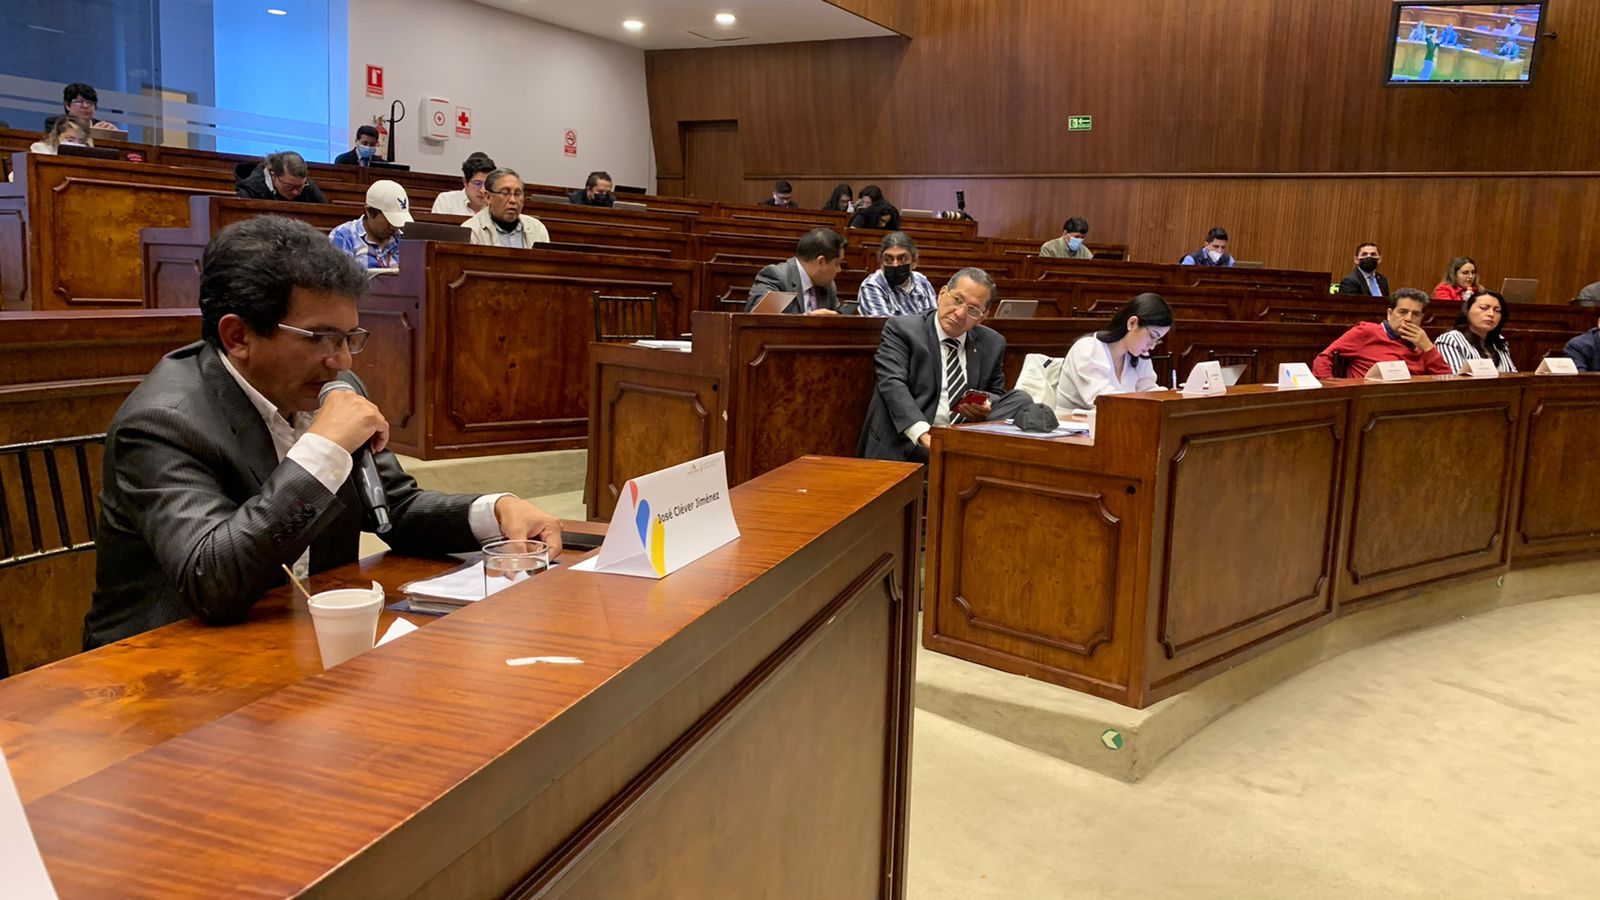 Comisión de Fiscalización recibió el testimonio de Cléver Jiménez y evaluadores de la Corte este 10 de agosto. /Foto: cortesía